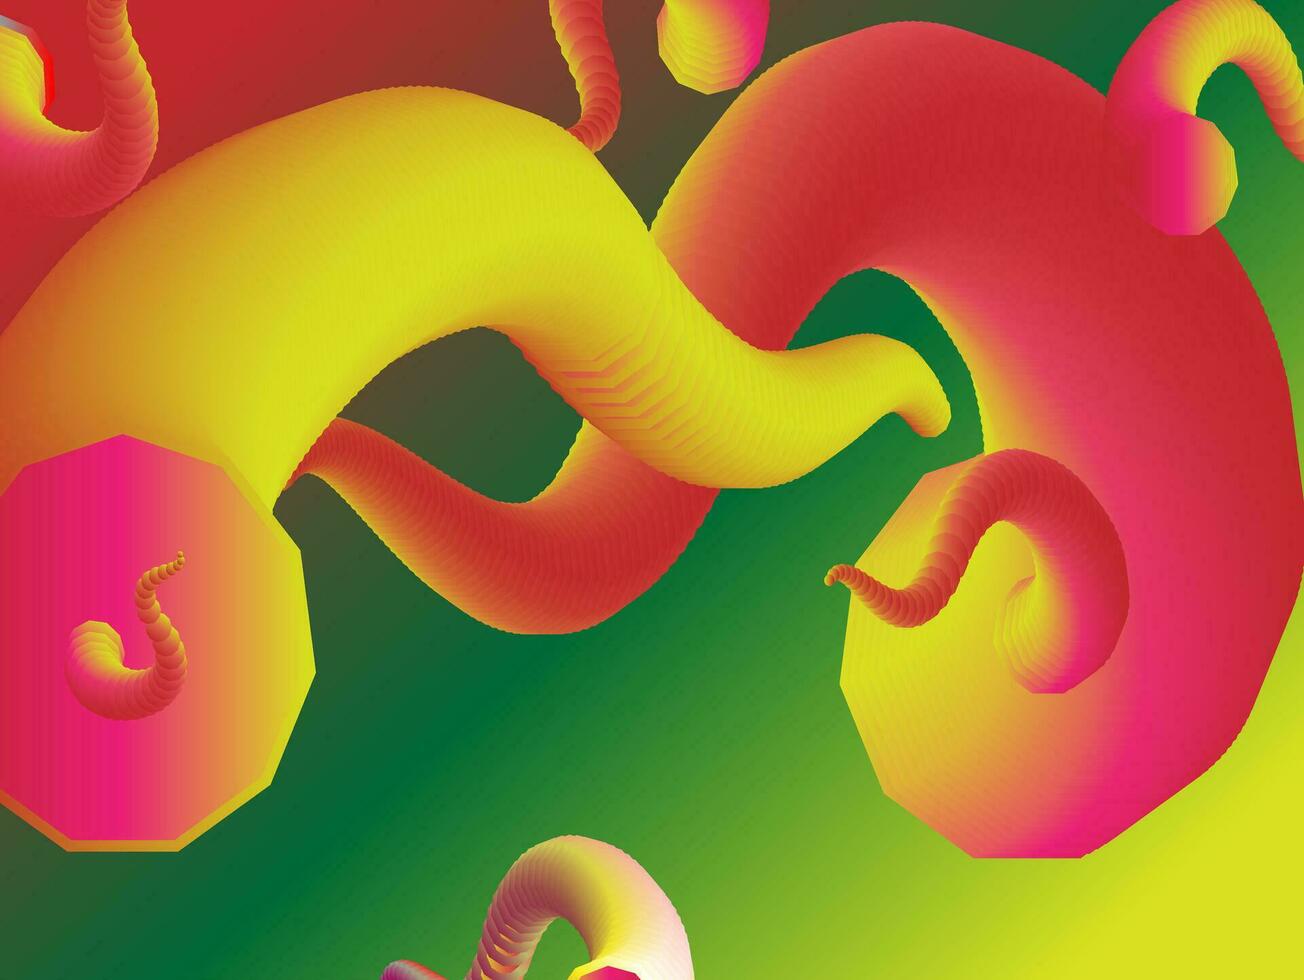 une coloré abstrait image de une serpent et un Oeuf vecteur